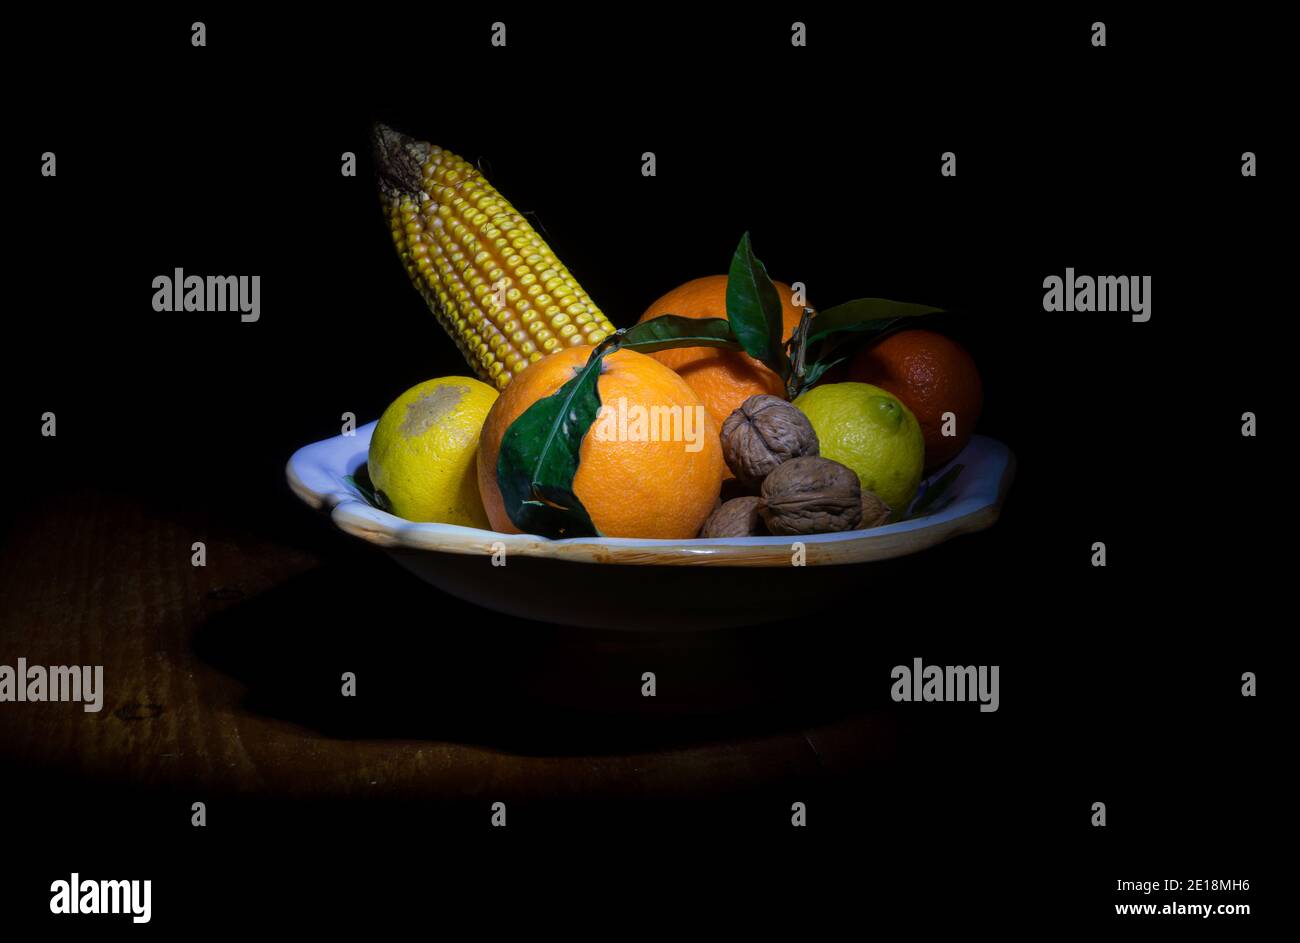 Encore plus de vie avec des fruits d'automne et d'hiver (citrons, mandarines, oranges, noix) et une oreille de maïs dans le style du Caravaggio Banque D'Images